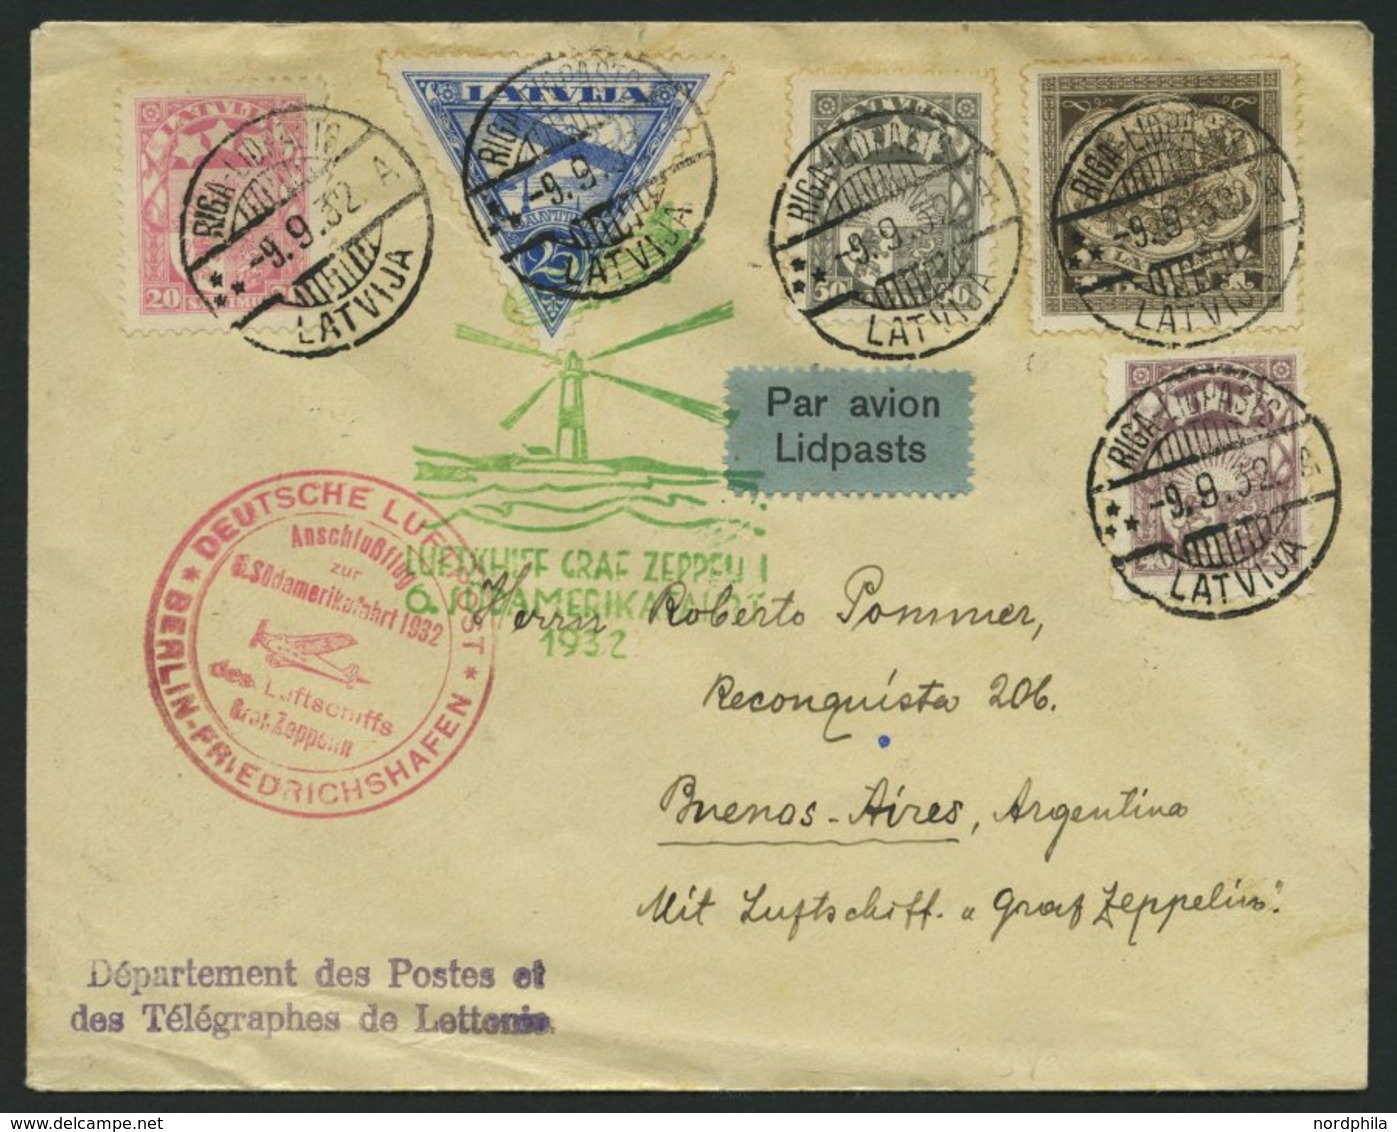 ZULEITUNGSPOST 177B BRIEF, Lettland: 1932, 6. Südamerikafahrt, Anschlußflug Ab Berlin, Brief Feinst - Airmail & Zeppelin